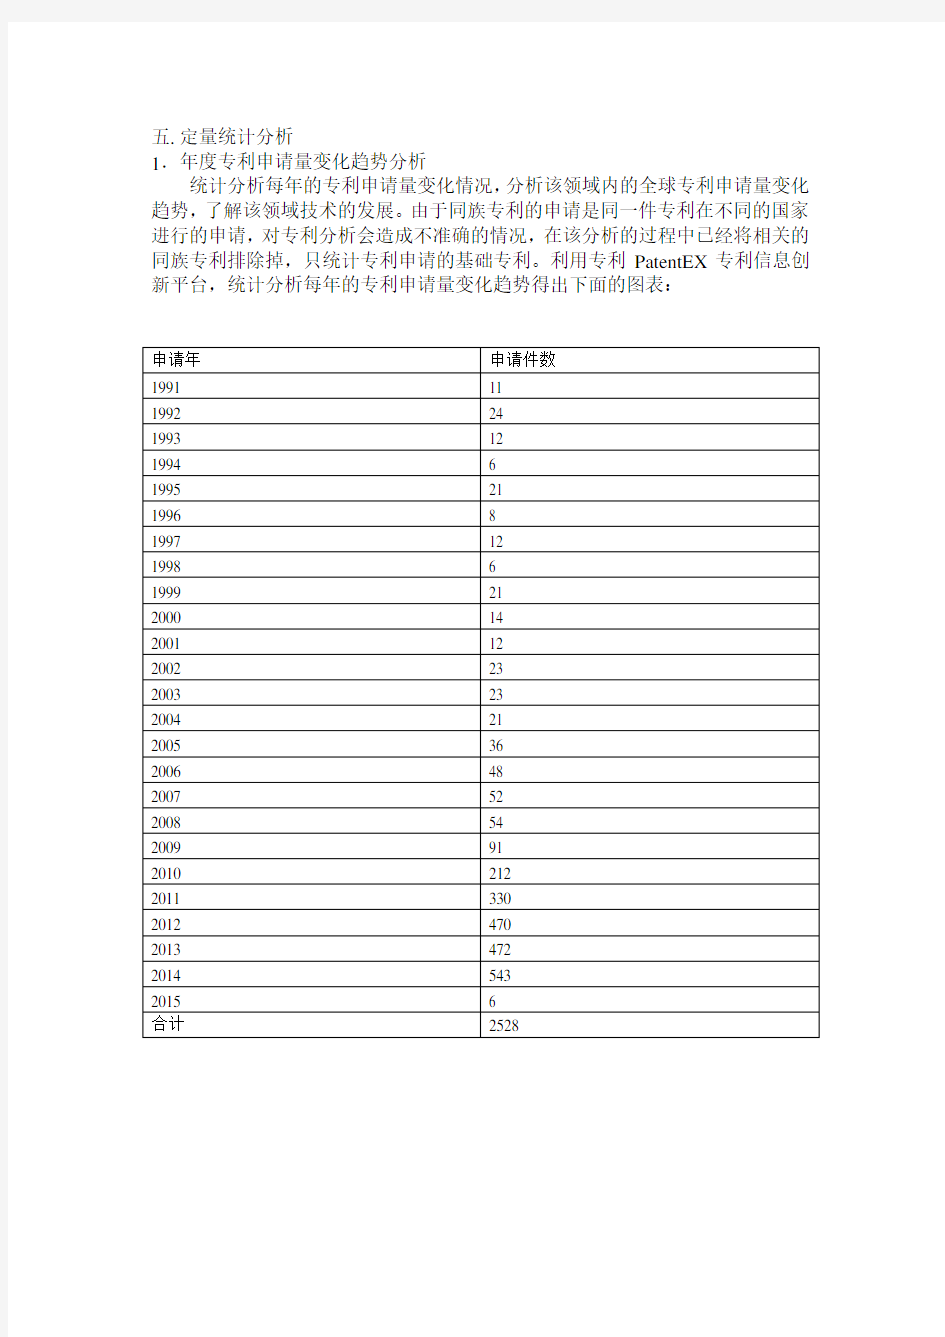 中国保温杯行业专利分析报告(粗略)